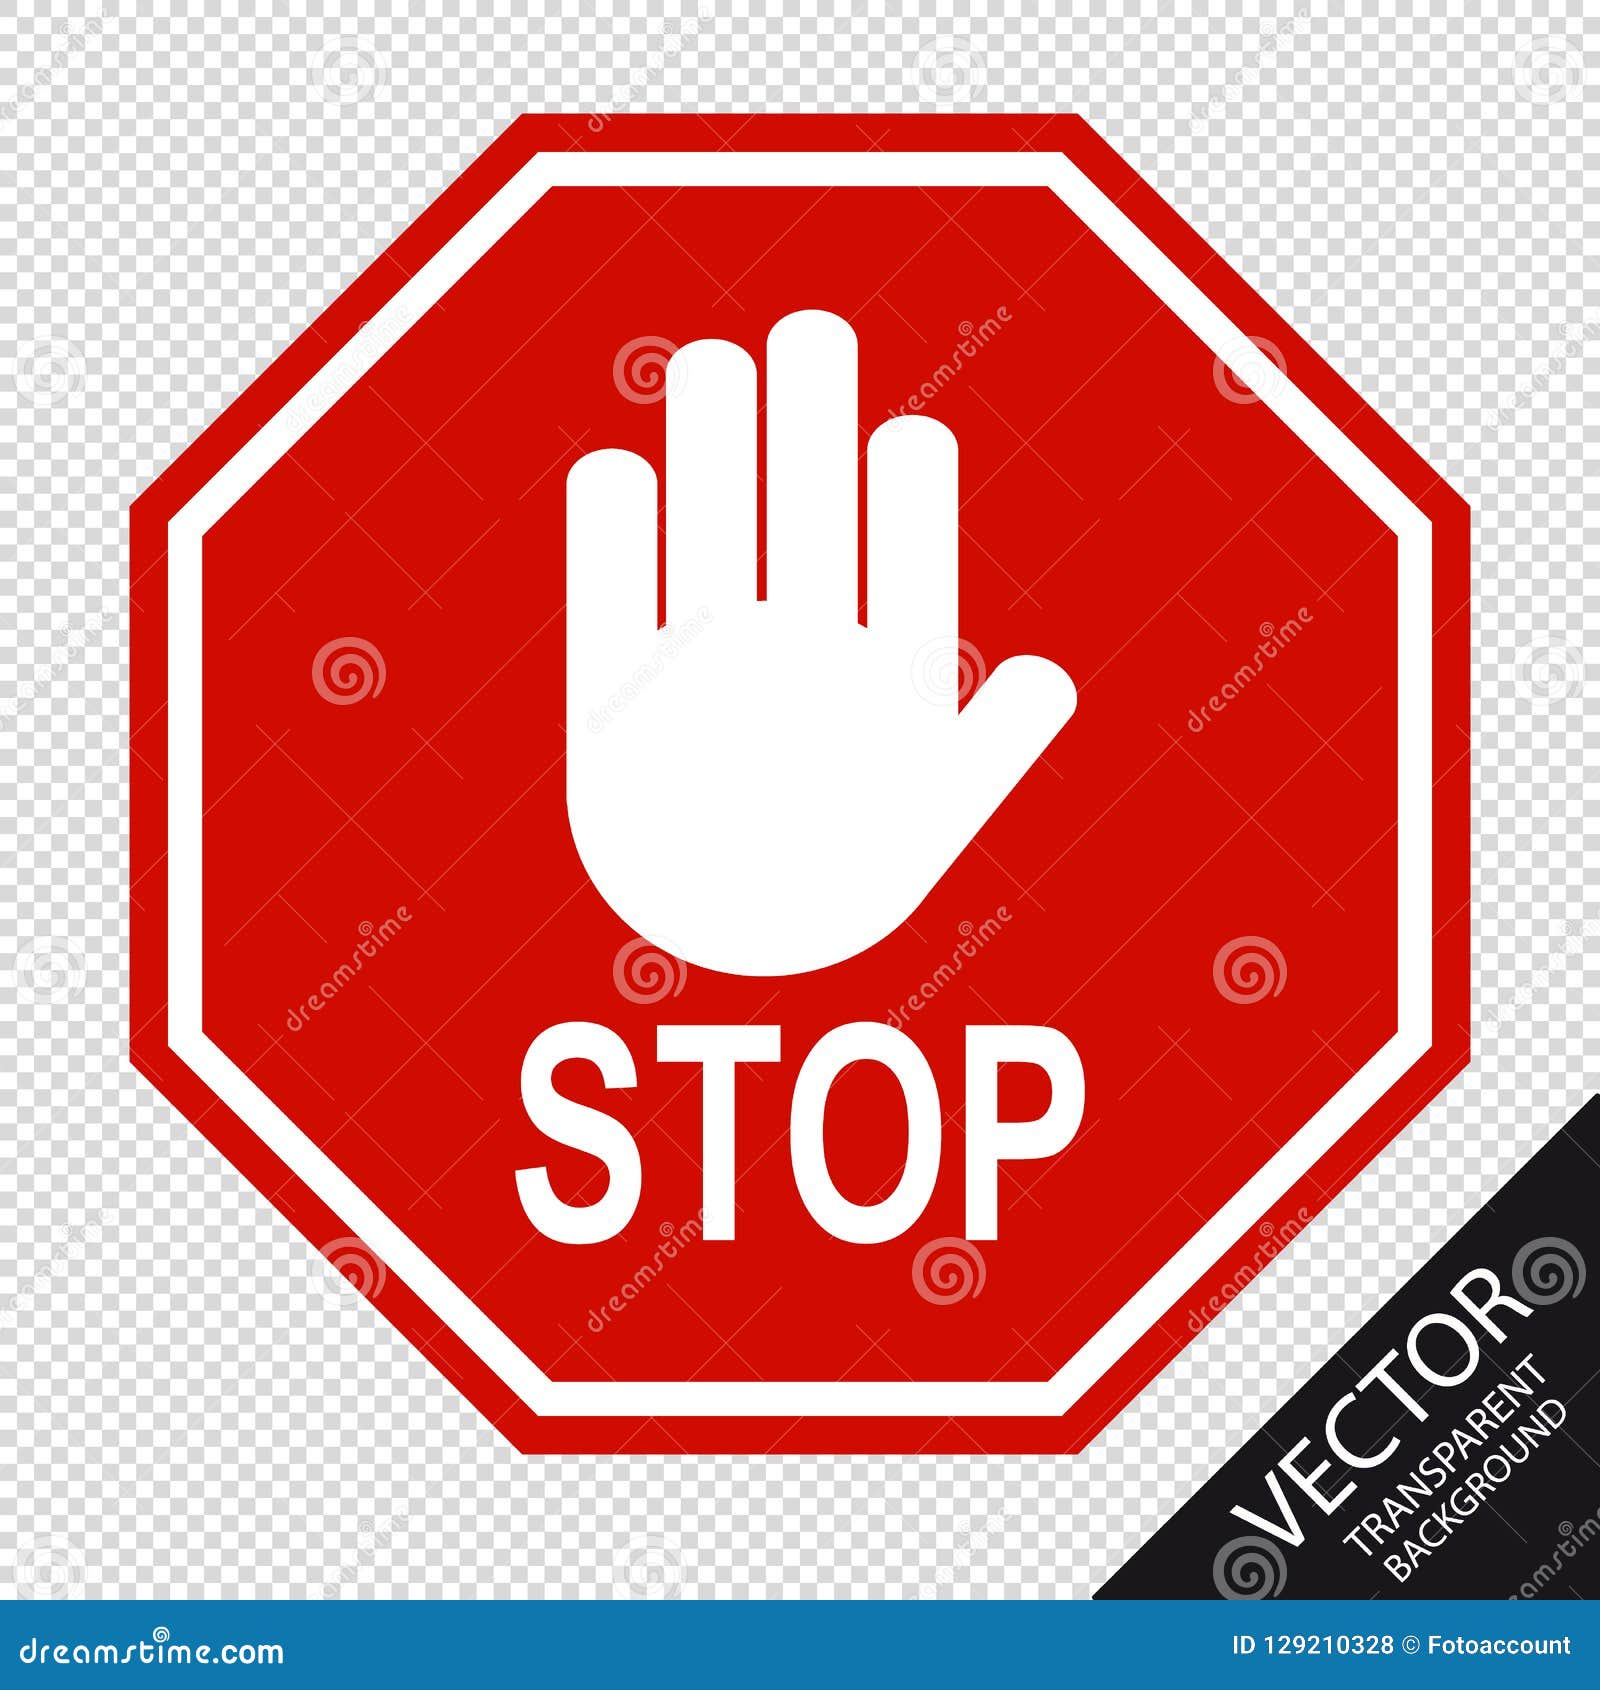 stop hand clip art